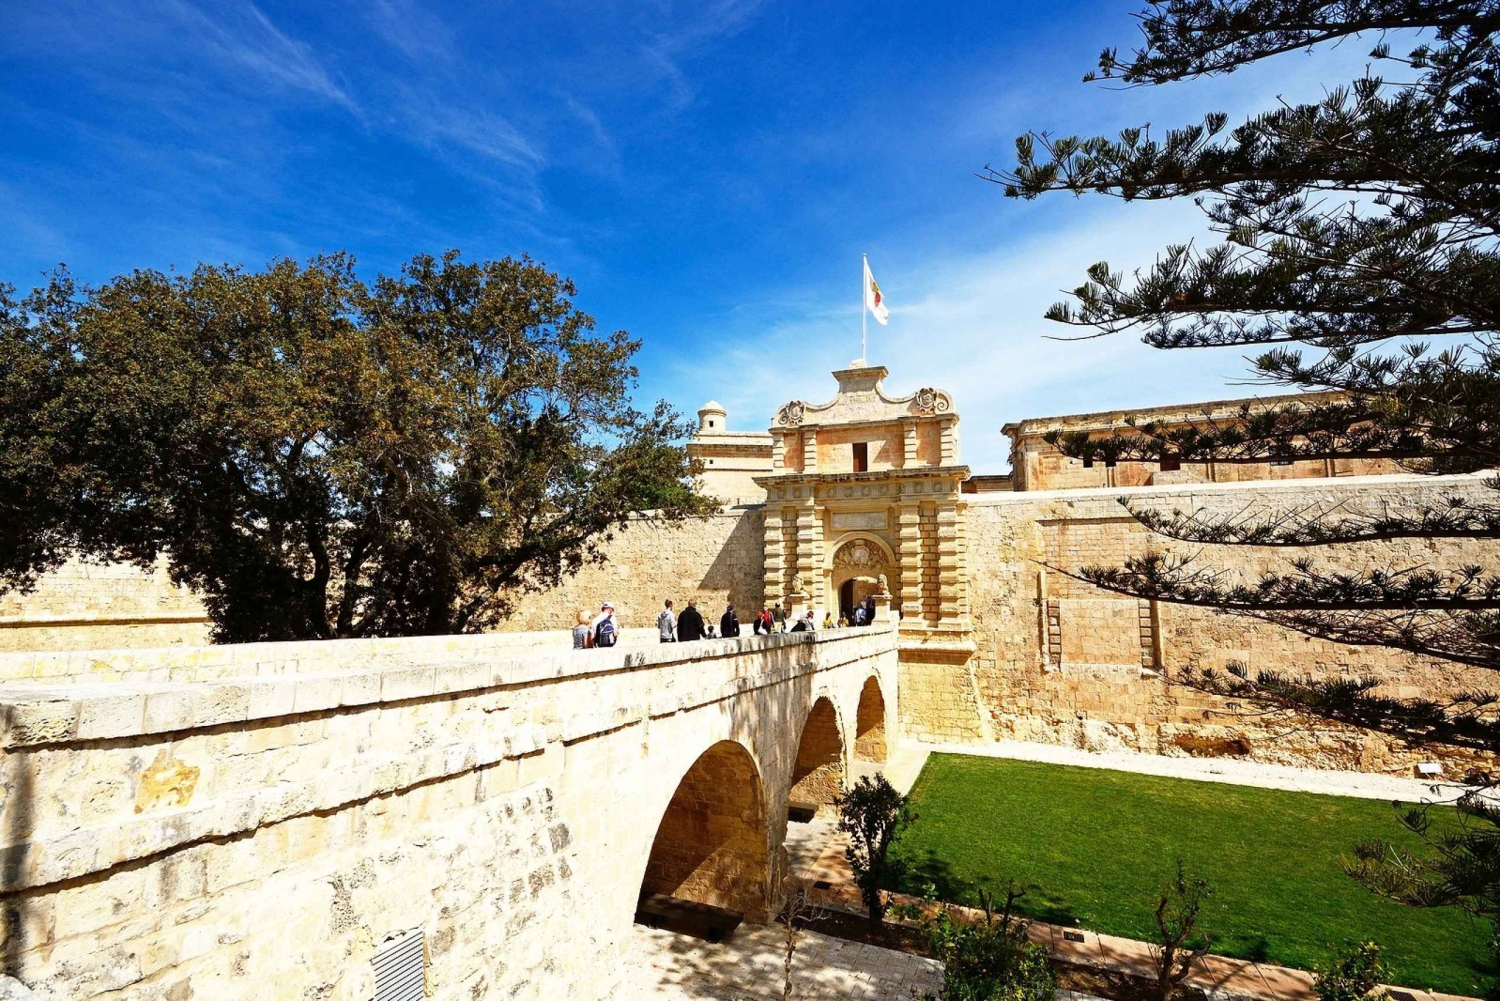 La Valette : visite privée des maisons et palais nobles de Malte